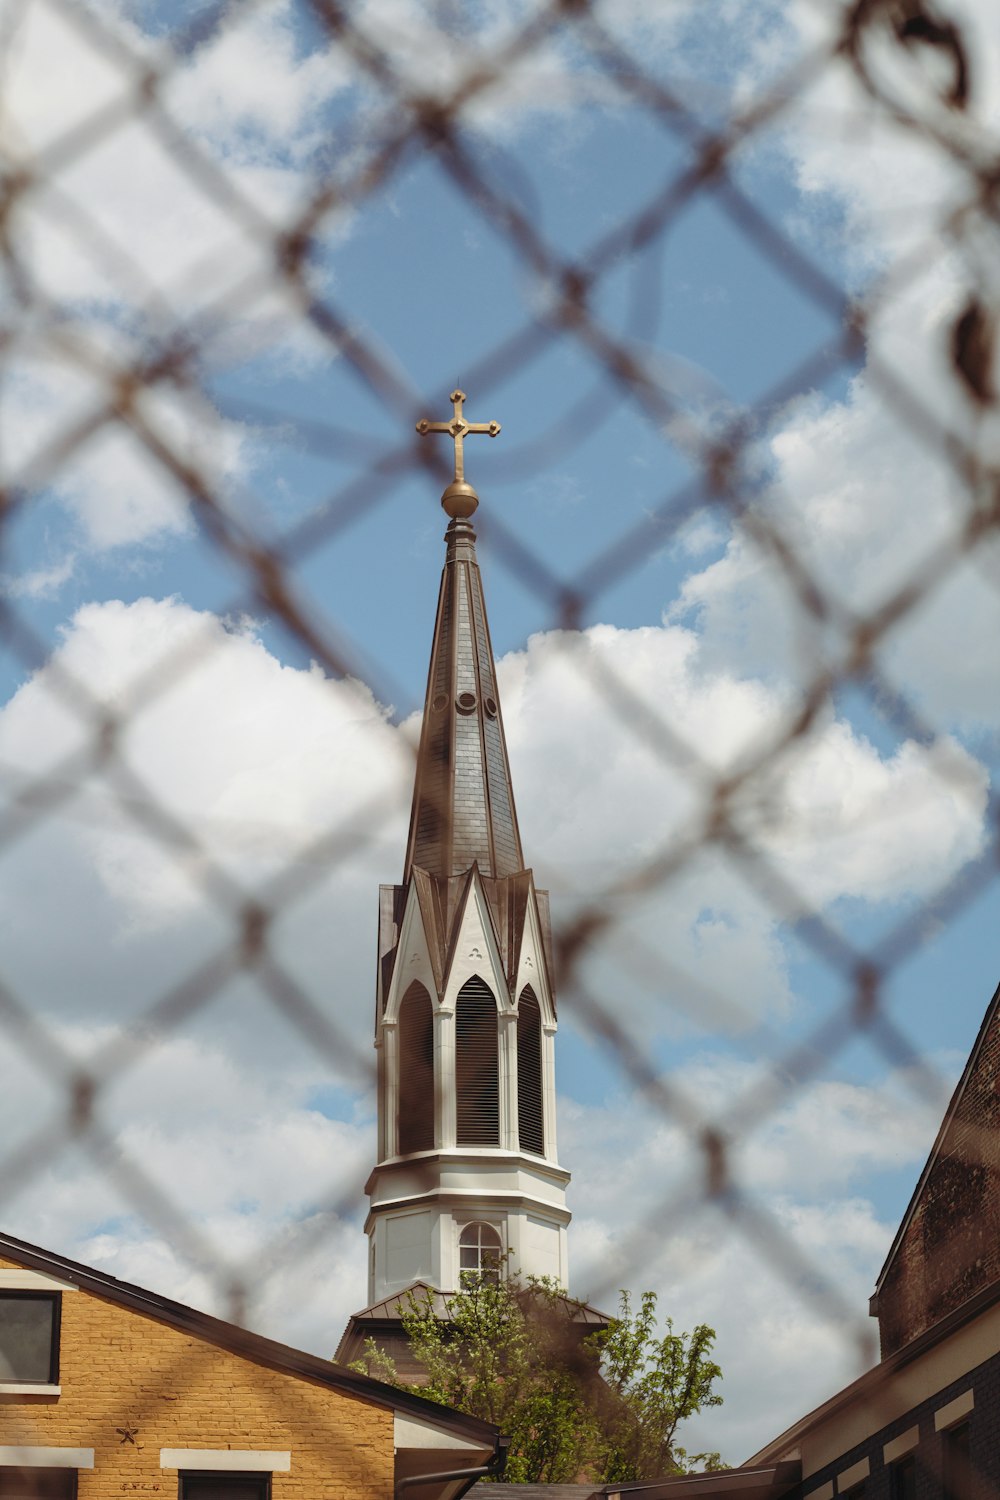 a church steeple seen through a chain link fence